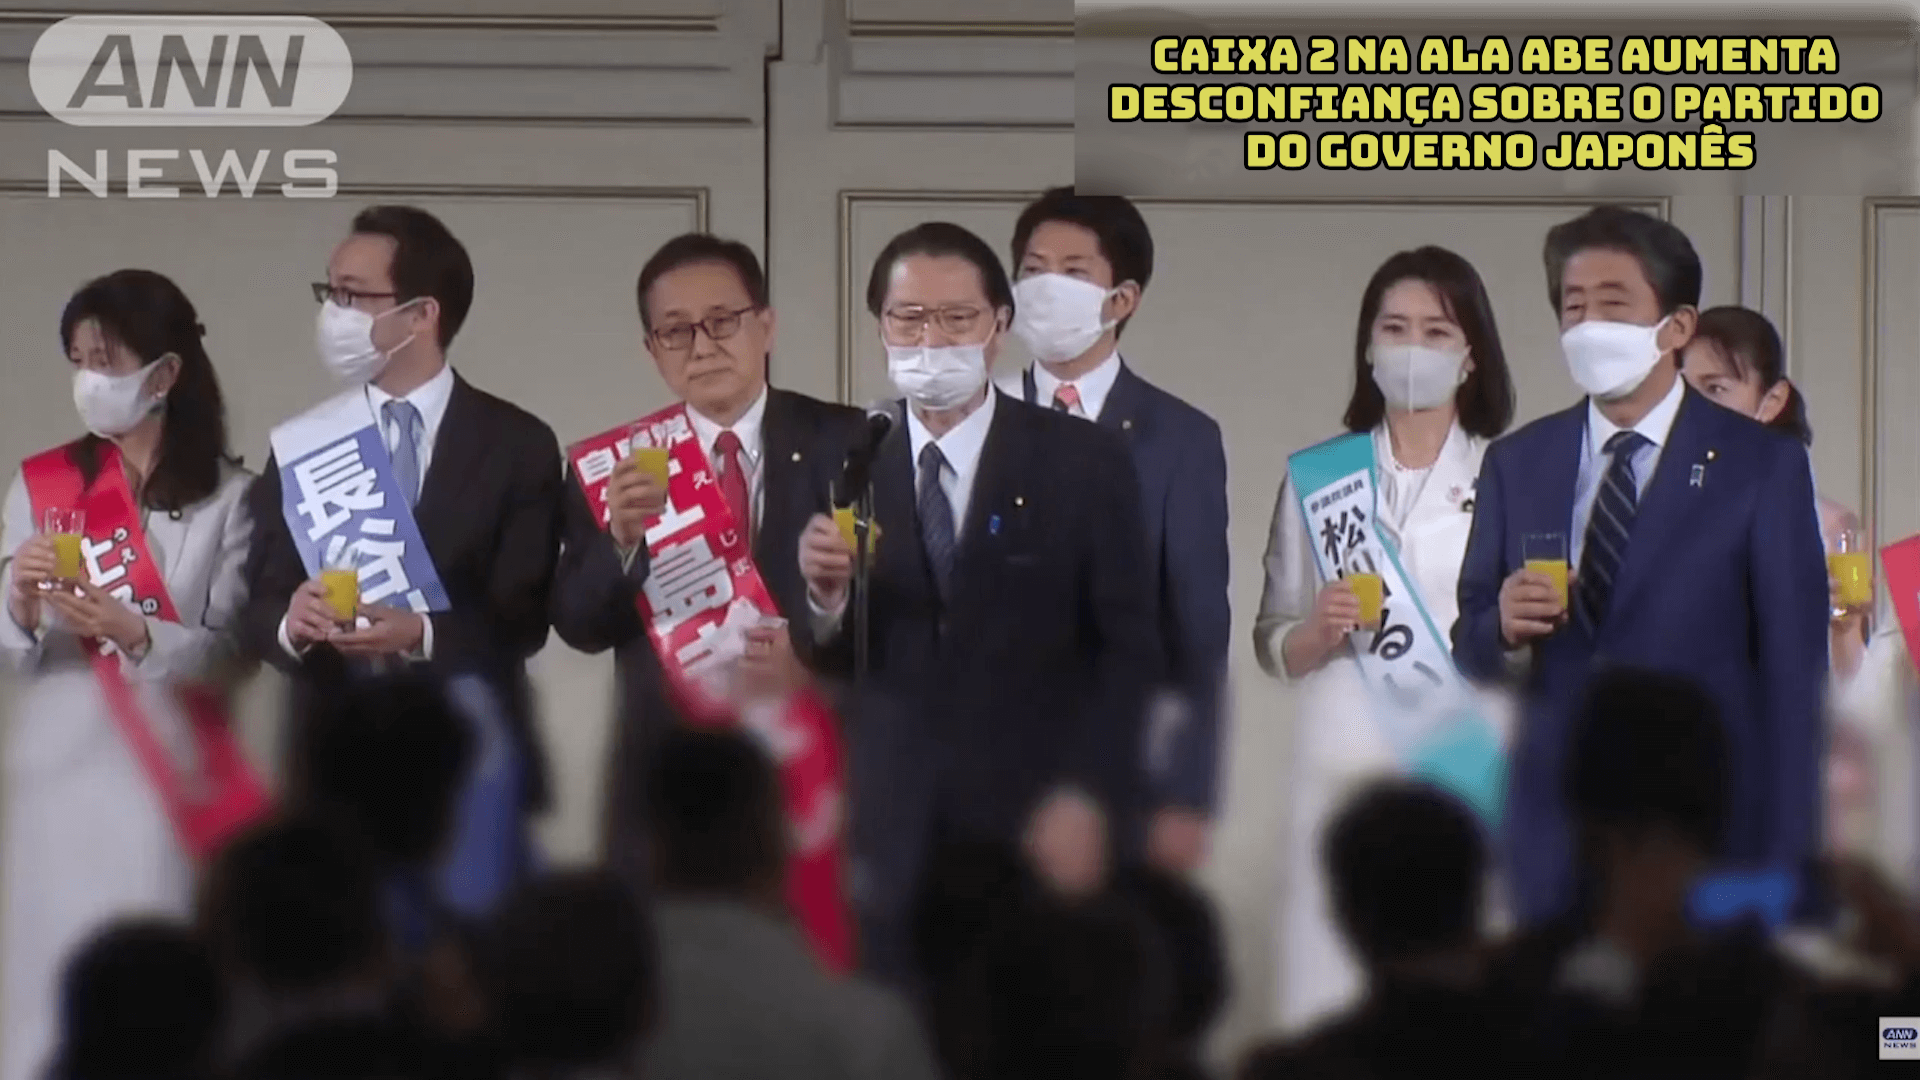 Caixa 2 na Ala Abe aumenta desconfiança sobre o Partido do governo japonês